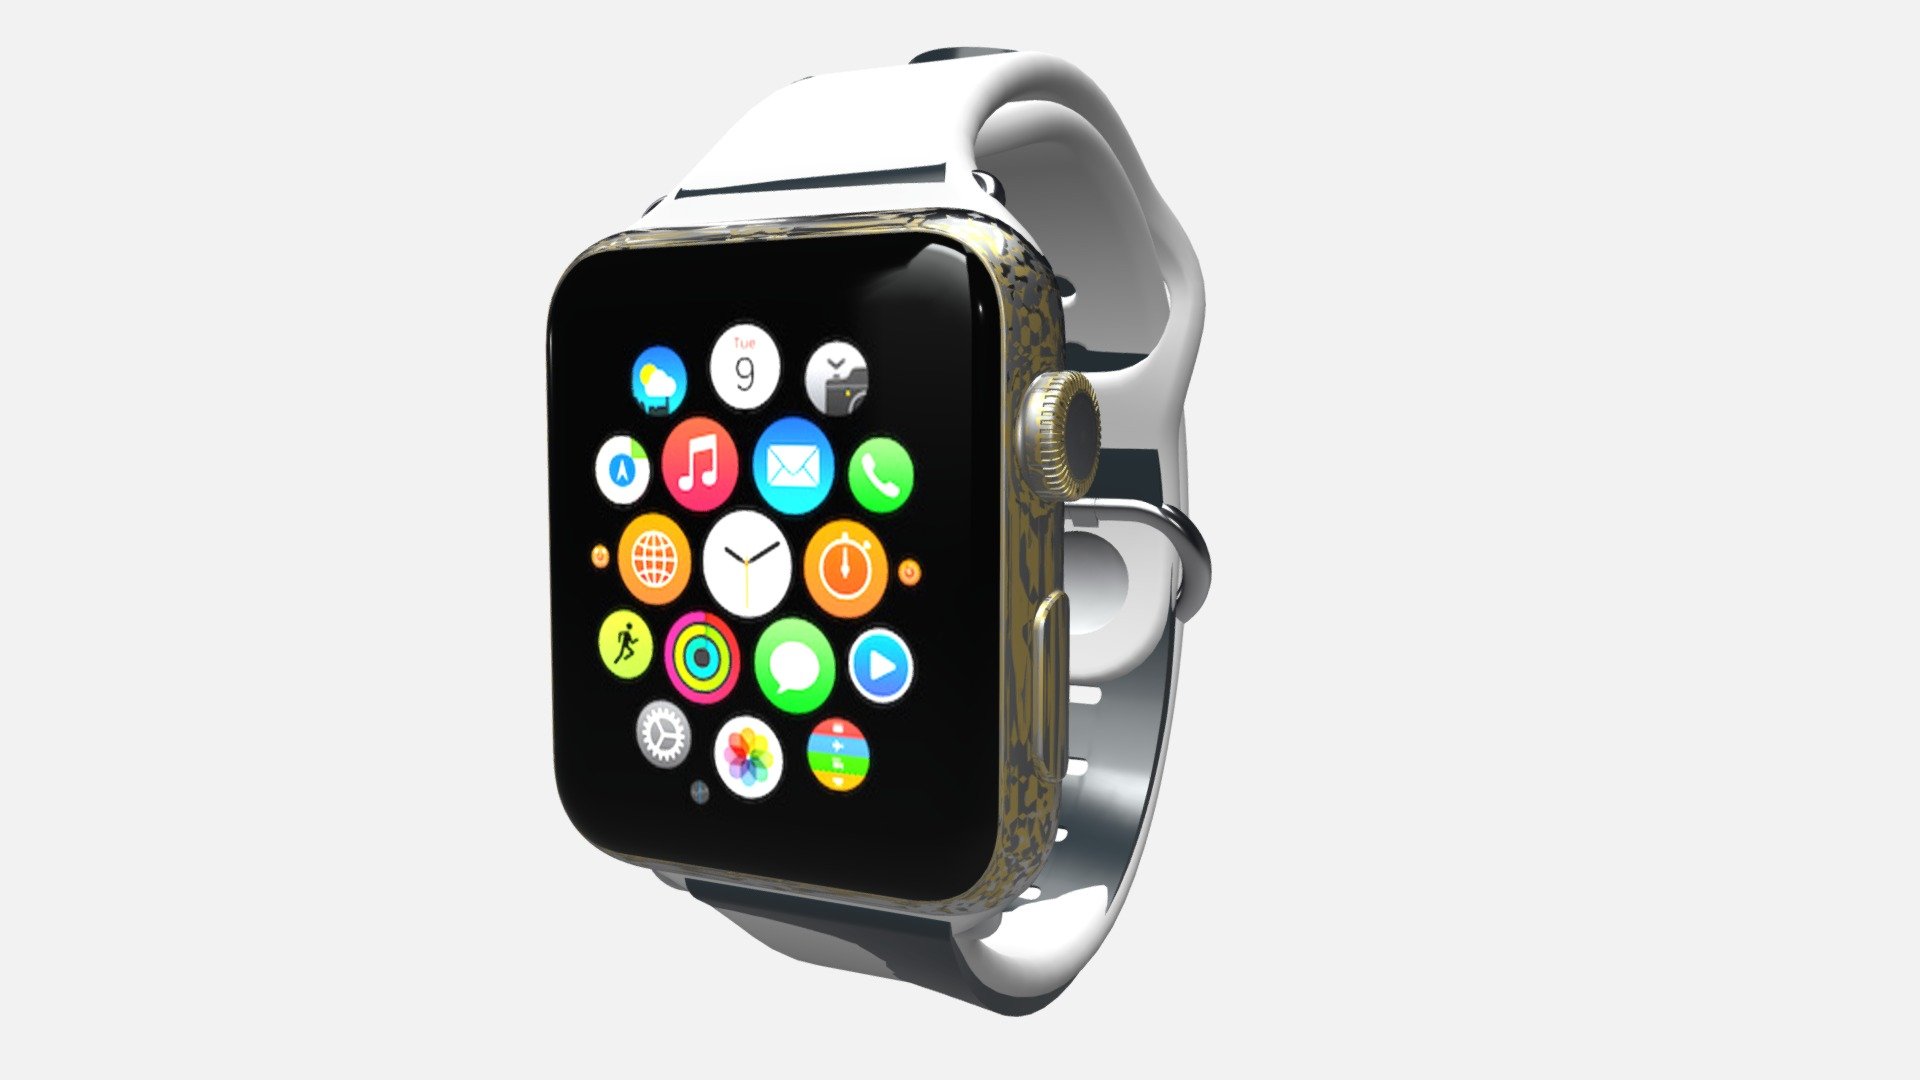 Apple Watch - 3D model by Sketchfab 3d model